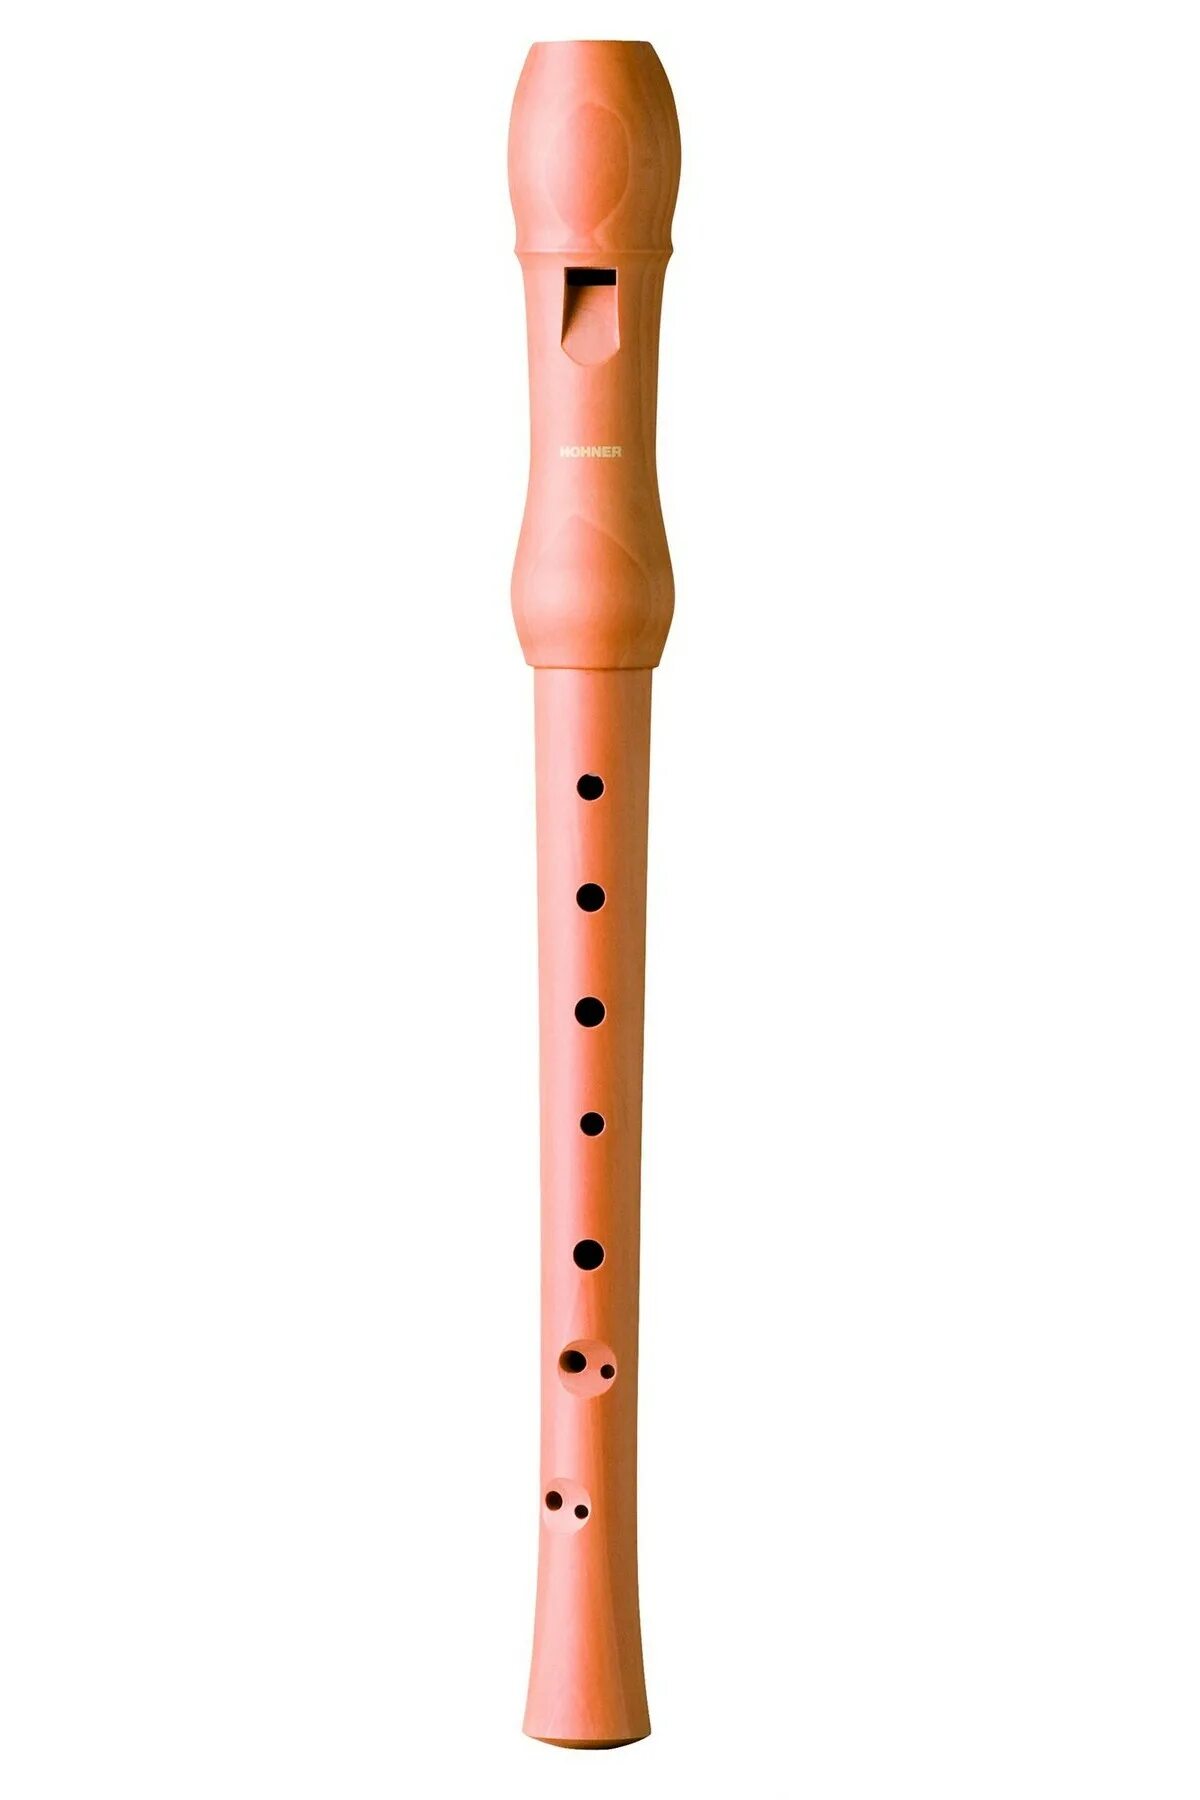 Блокфлейта Hohner b9533. Блокфлейта Hohner b9532. Блокфлейта немецкая система или барочная. Польская пластмасса флейта pl3432.